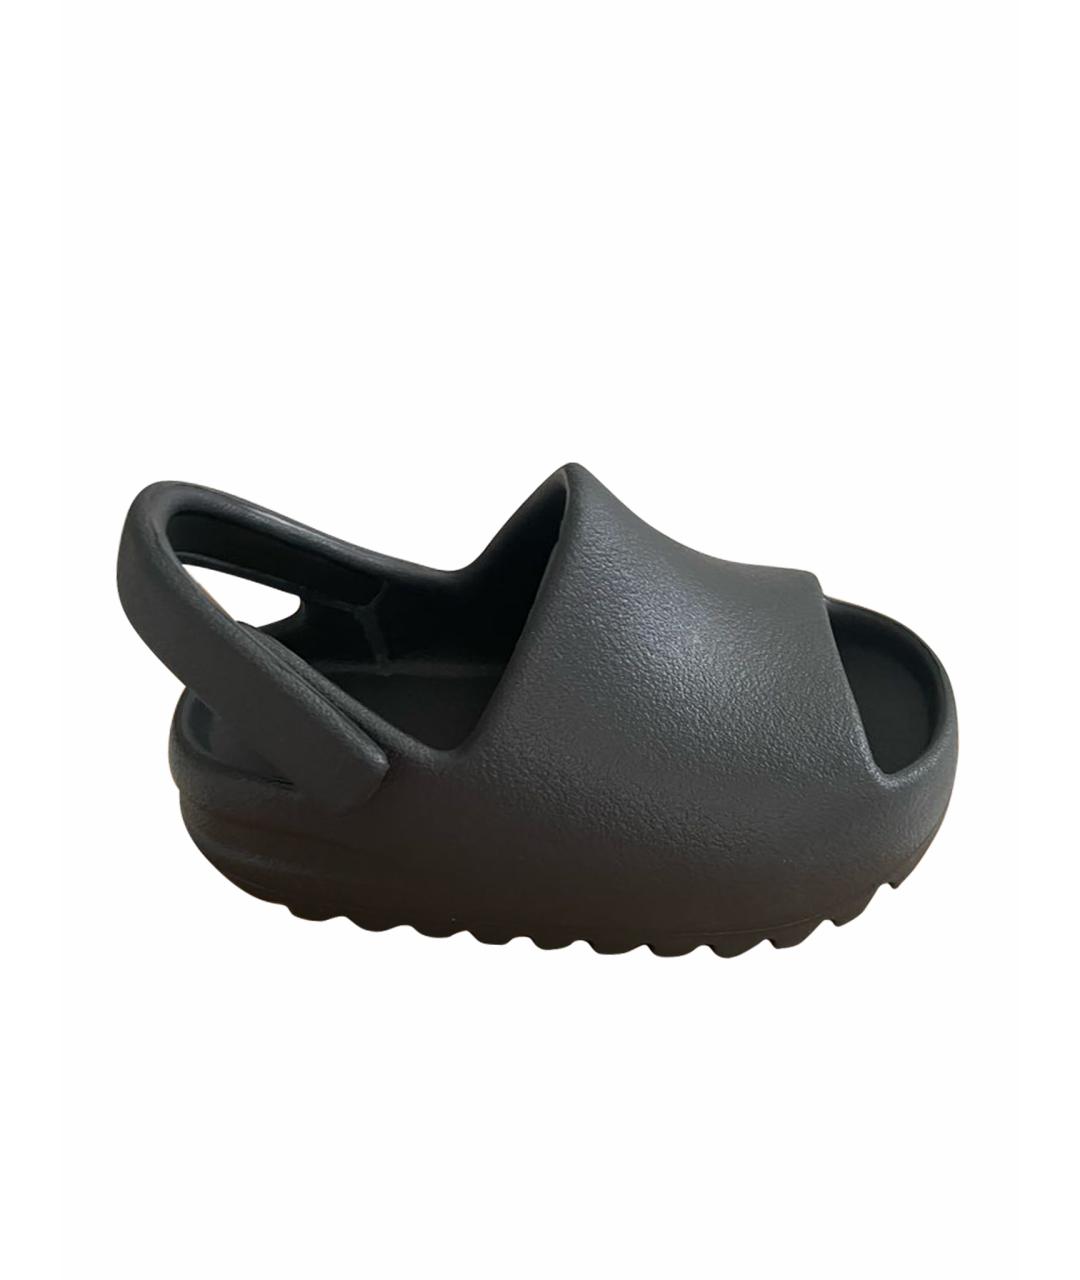 ADIDAS YEEZY Черные резиновые сандалии и шлепанцы, фото 1